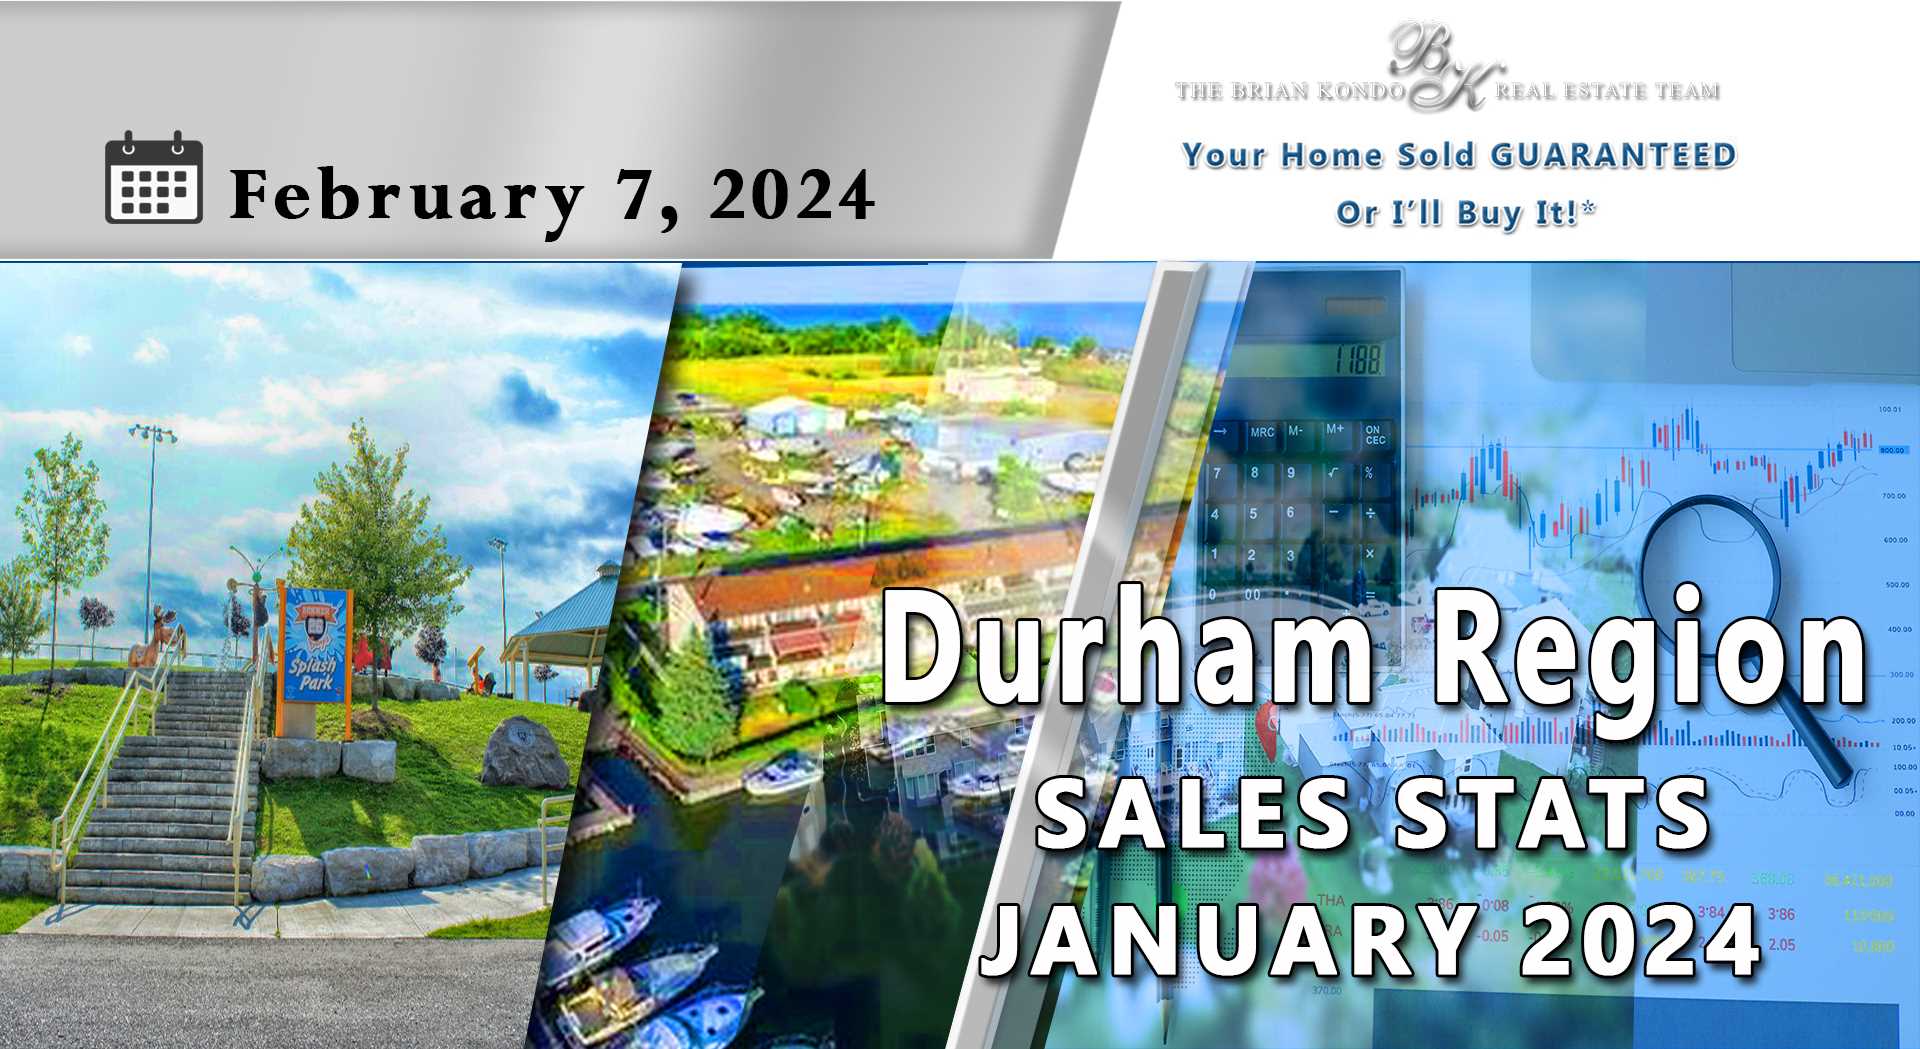 DURHAM REGION SALES STATS JANUARY 2024